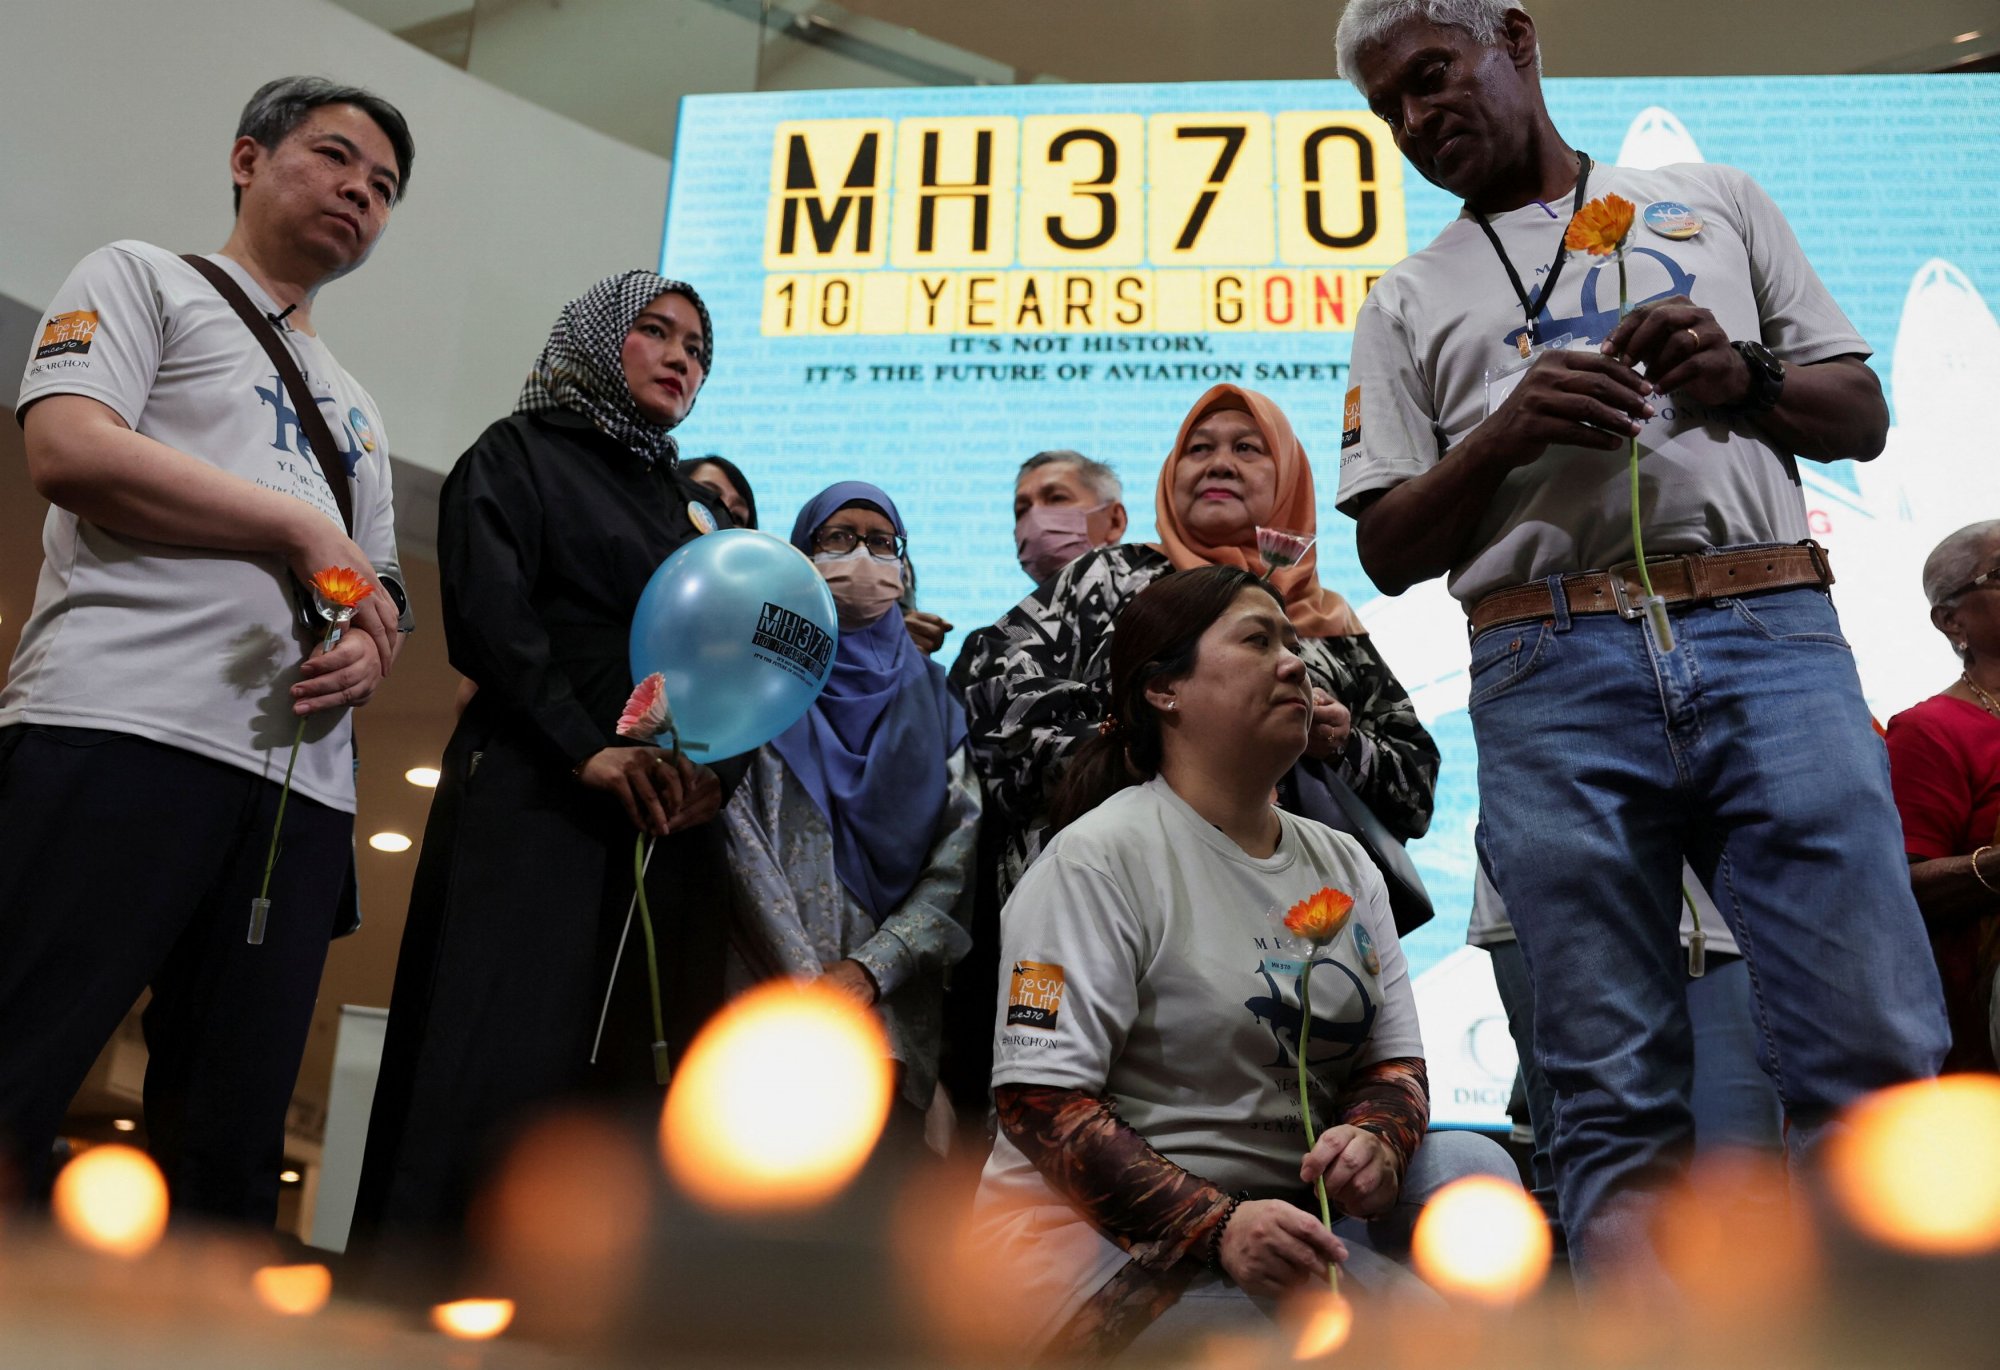 Αποφασισμένοι να βρουν τη μοιραία πτήση MH370 - Η πρόταση για το μεγαλύτερο θρίλερ της αεροπορίας